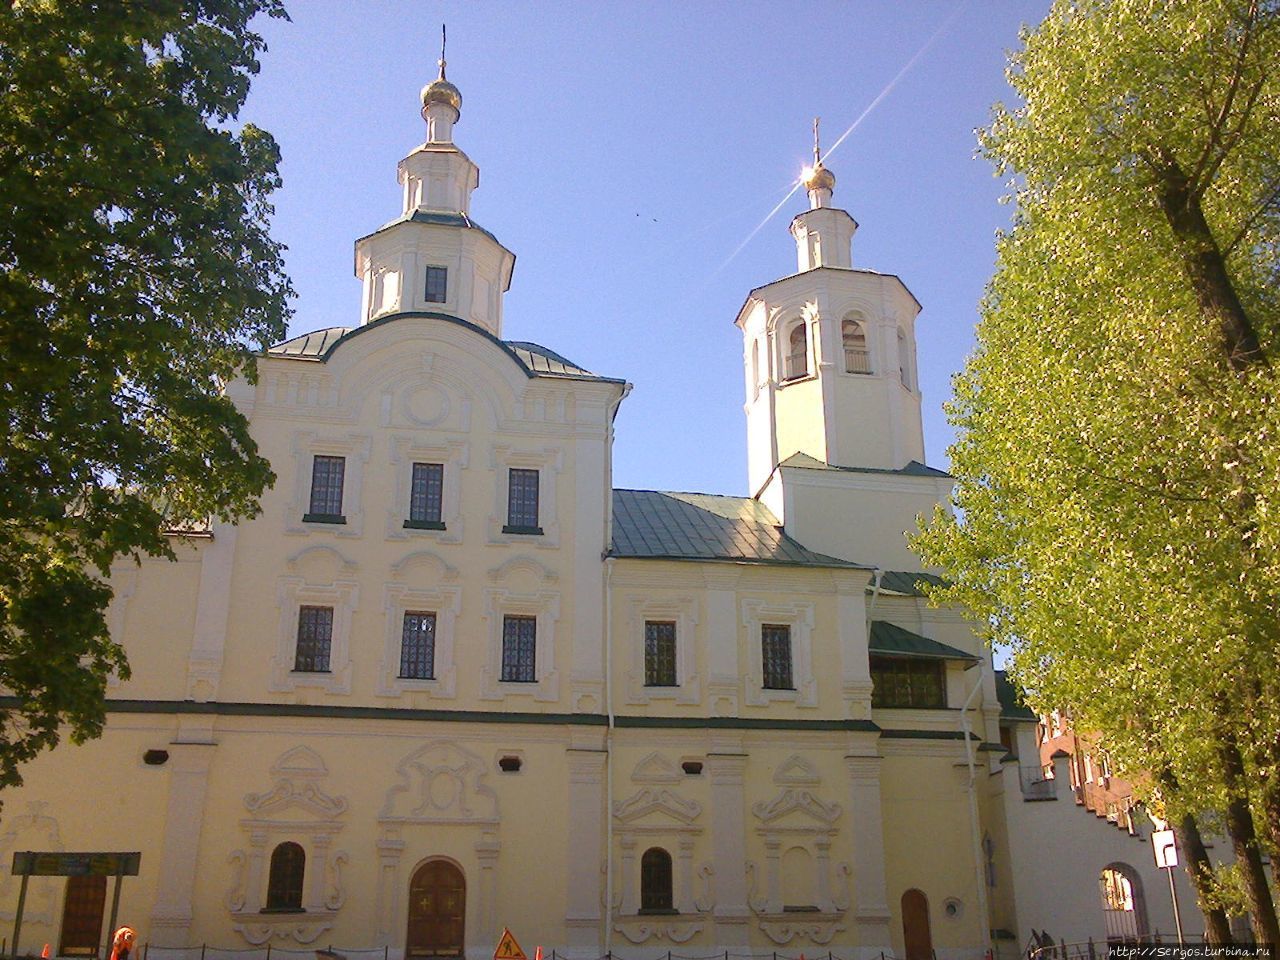 Спасо-Преображенский Авраамиев монастырь заложен аж в начале XIII века Смоленск, Россия